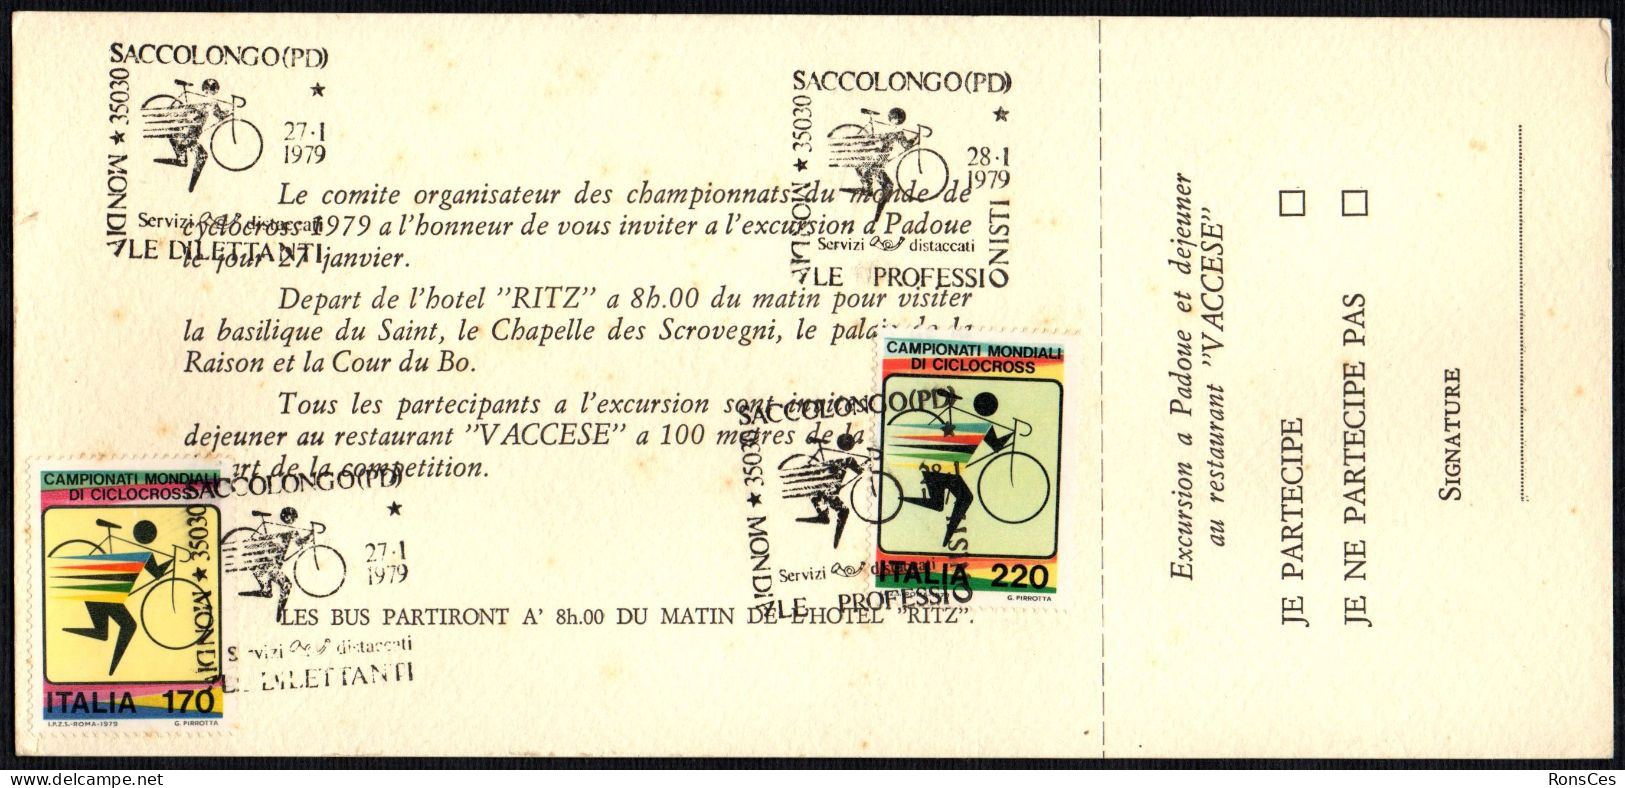 CYCLING - ITALIA SACCOLONGO (PD) 1979 - CAMPIONATO MONDIALE CICLOCROSS - 2 ANNULLI PROFESSIONISTI / DILETTANTI - A - Cyclisme